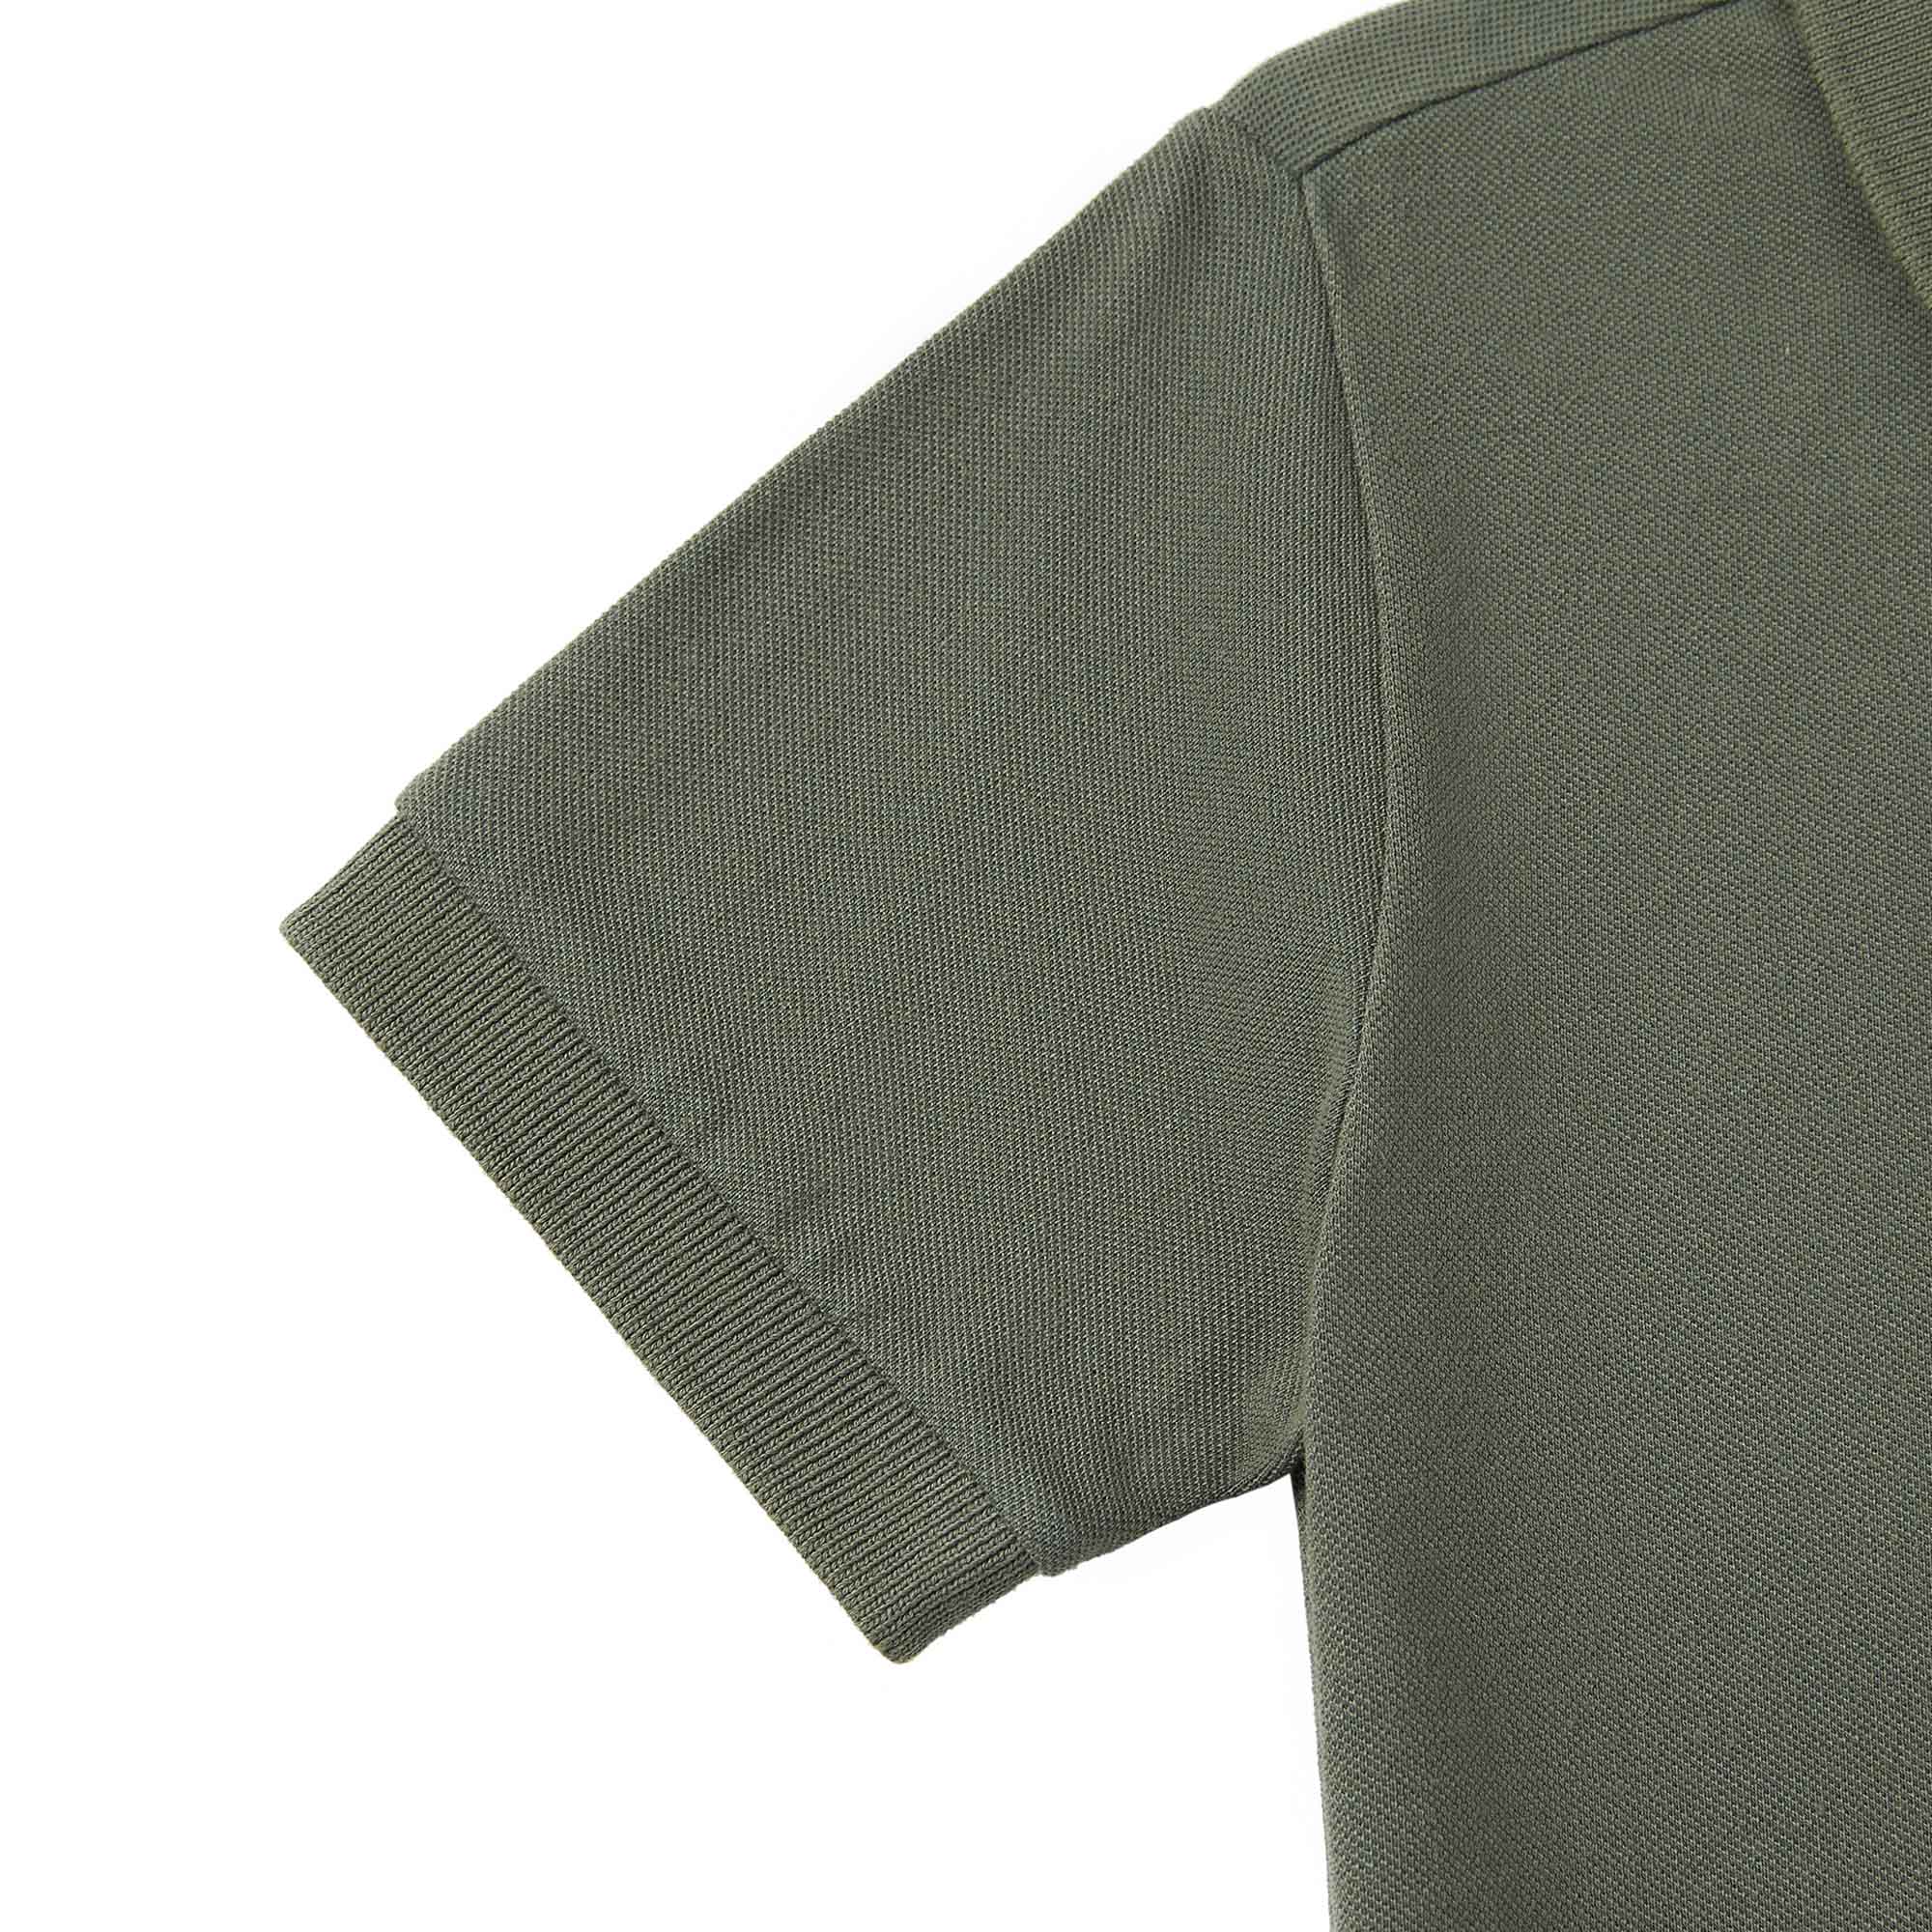 Boys Dark Green Cotton Polo Shirt